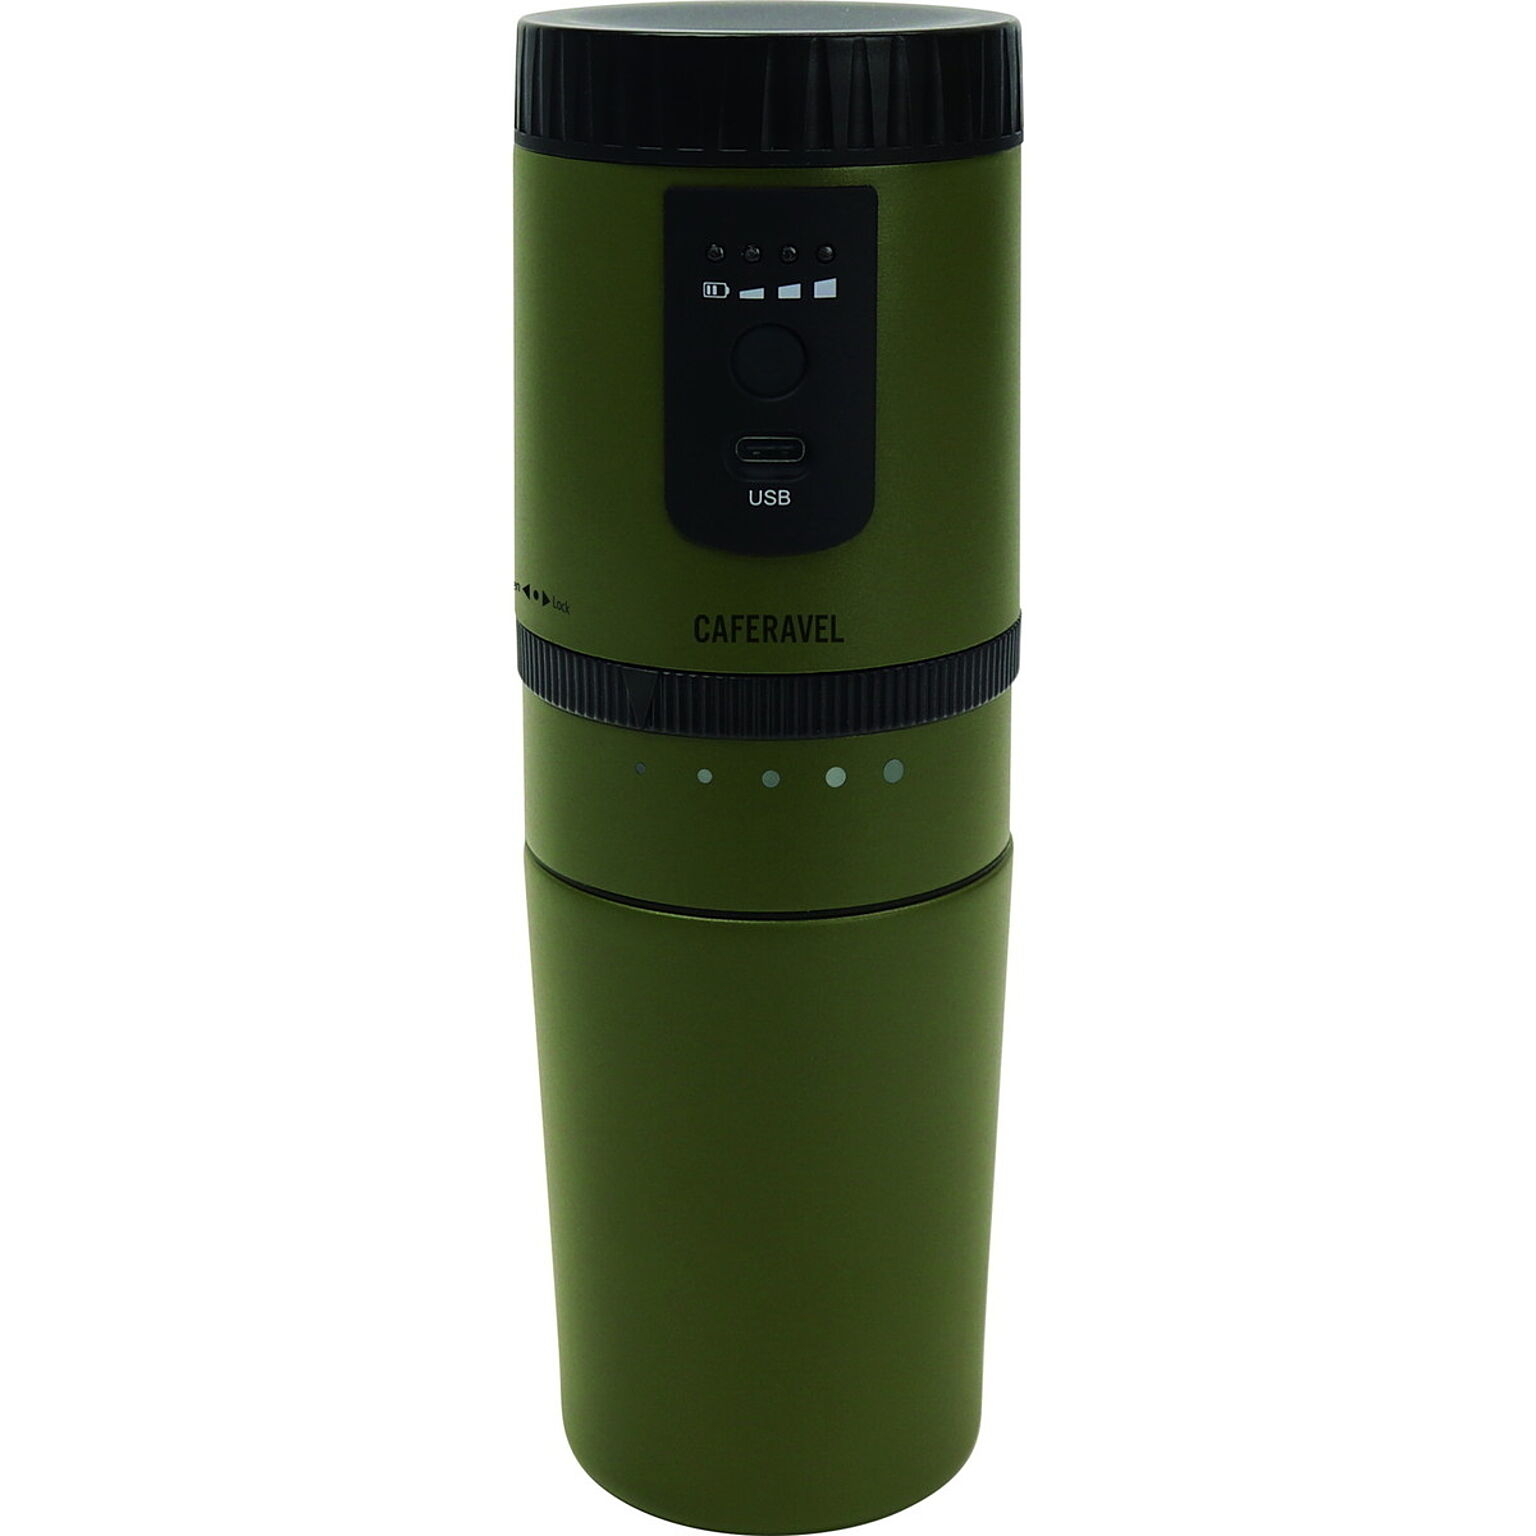 カフェ カフェラベル コーヒーミル コーヒーメーカー 一体型 電動式 USB充電 ダイヤル調節 オールインワン ドリップコーヒー 持ち運び 水筒 マイボトル ステンレス 保温 保冷 アウトドア オフィ